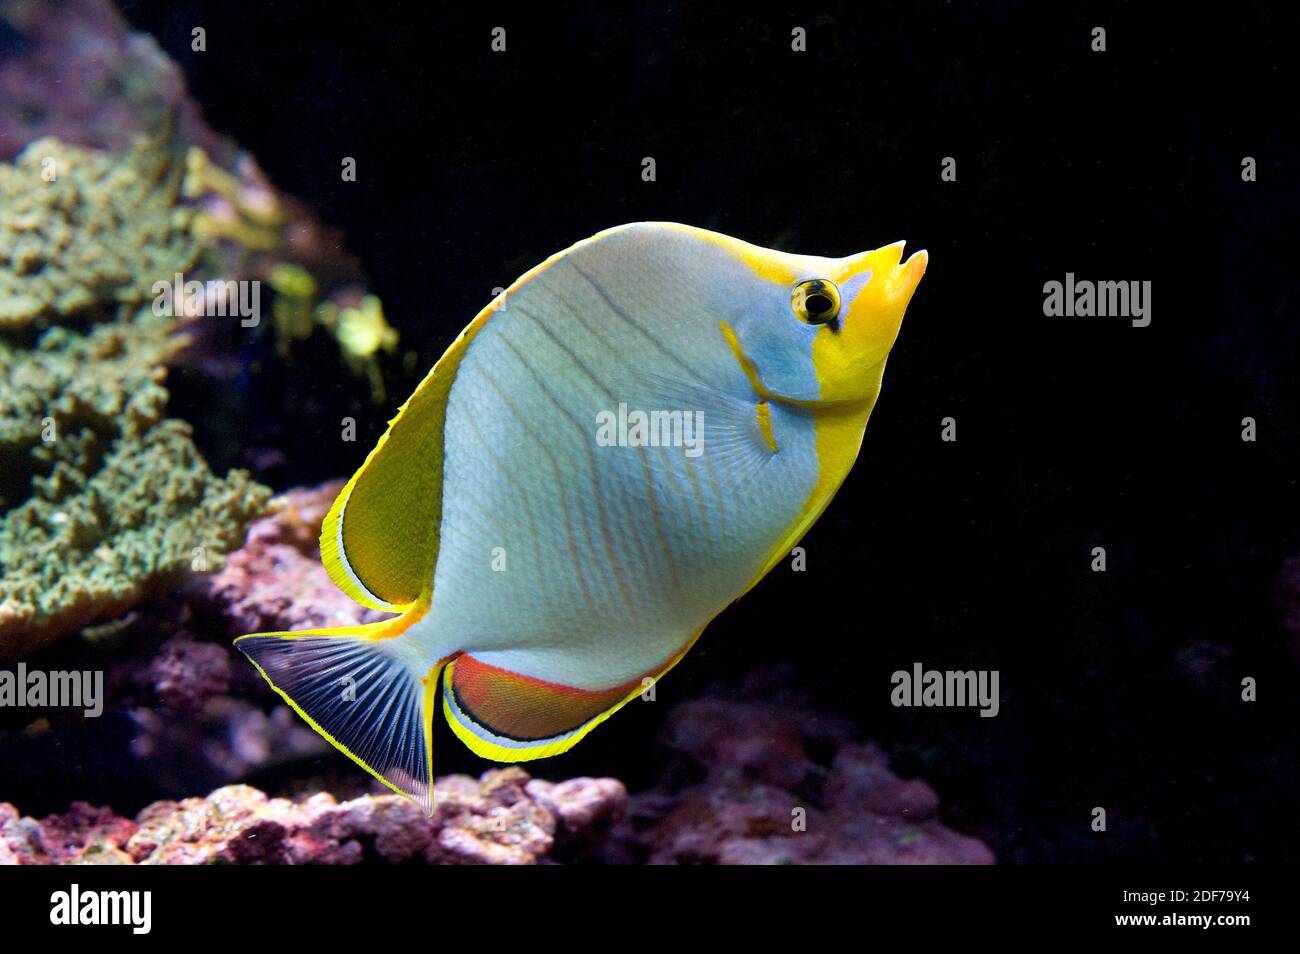 Le babeurre jaune (Chaetodon xanthocephalus) est un poisson marin originaire de l'océan Indien tropical. Banque D'Images